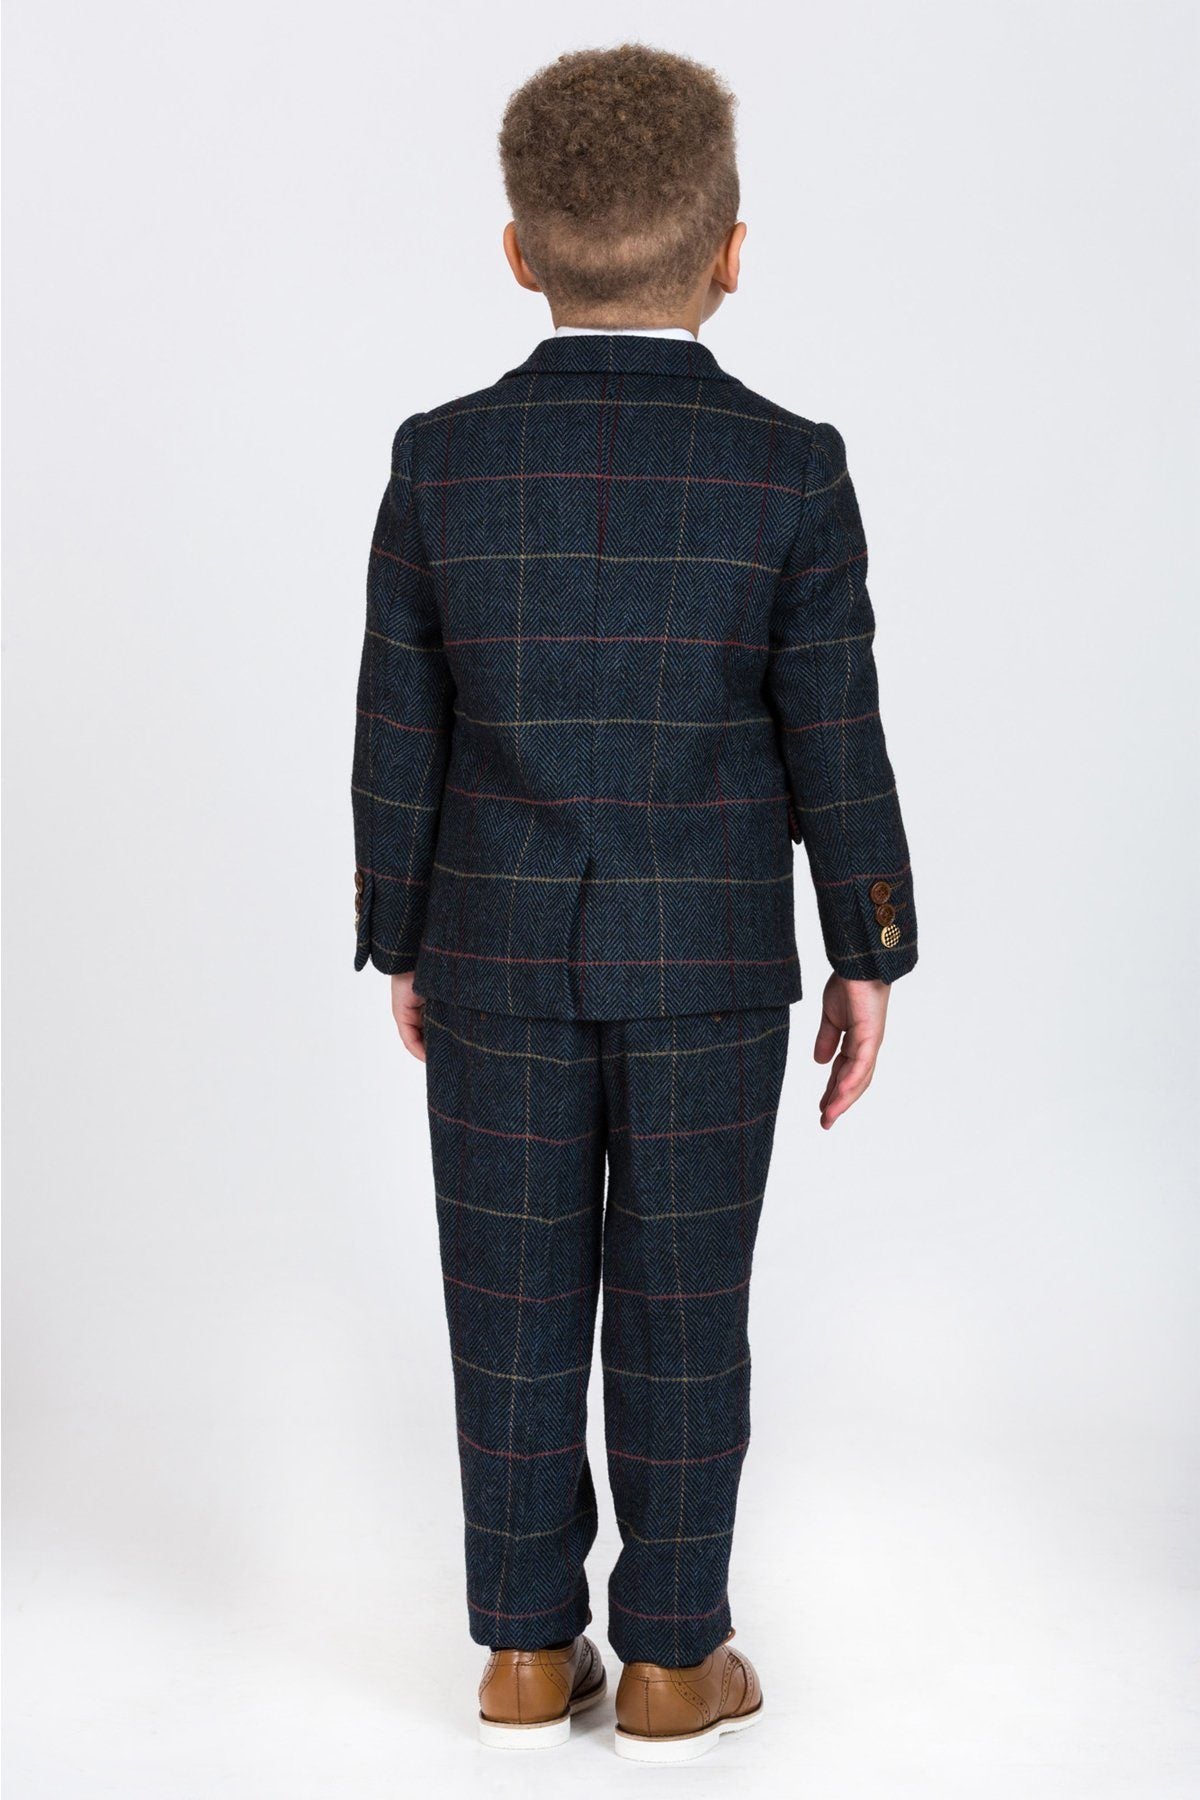 Eton Boy 3 Piece Suit - Spirit Clothing